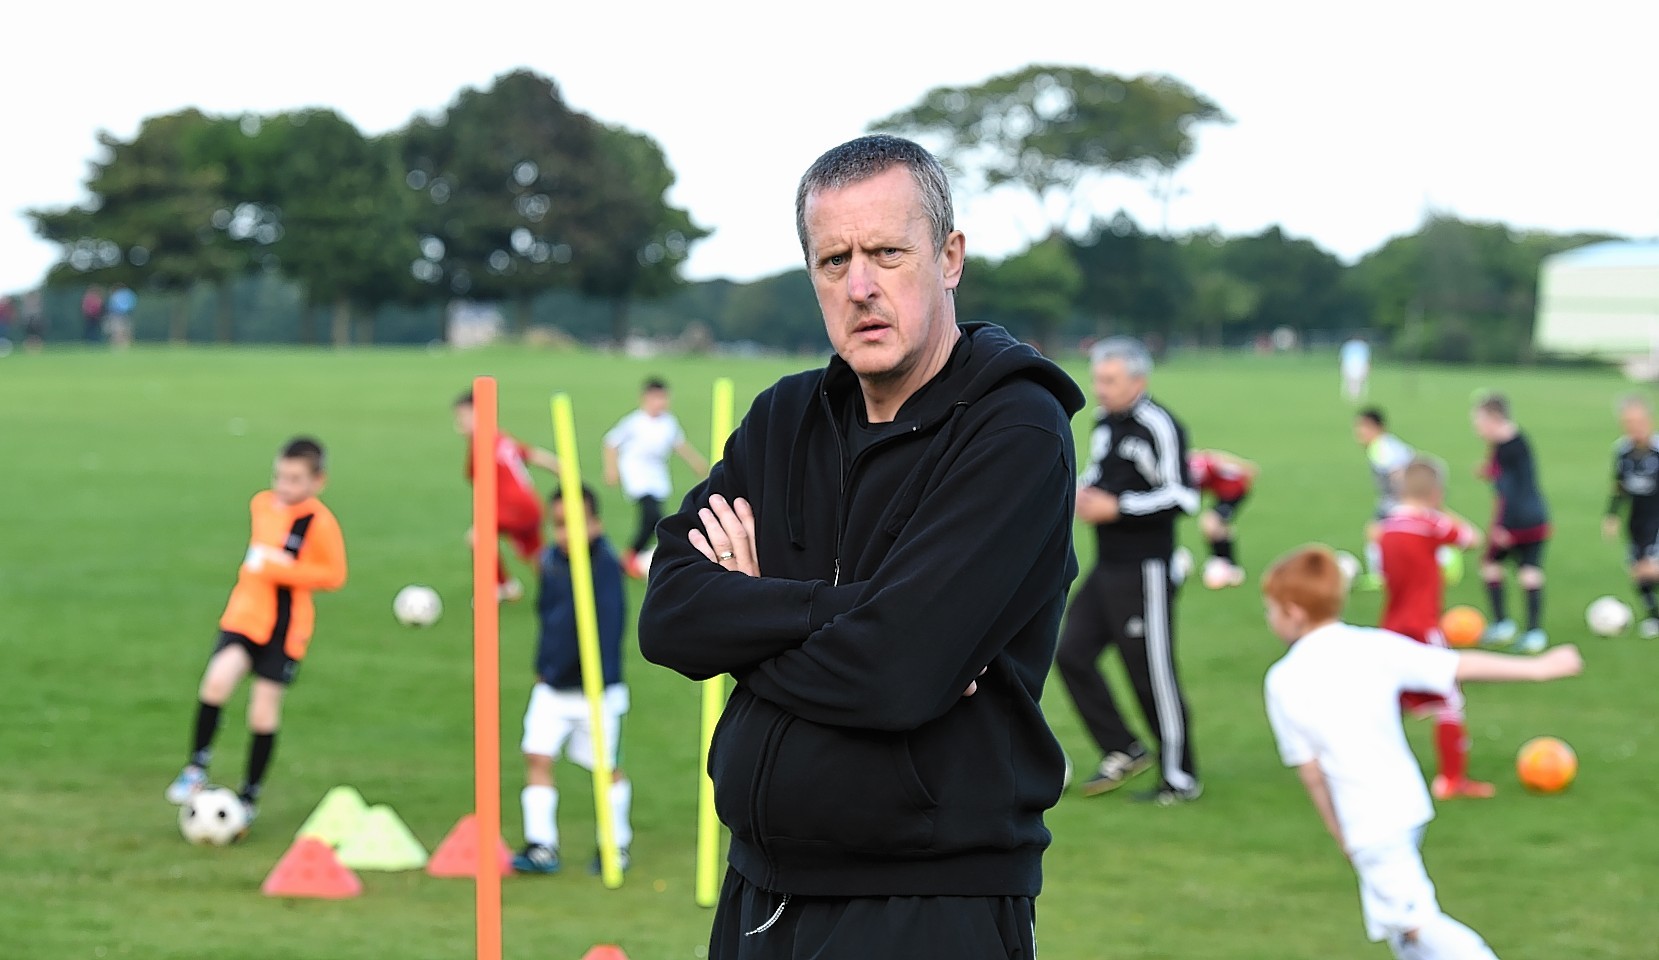 Northstar Community Football Coach Gary Milne